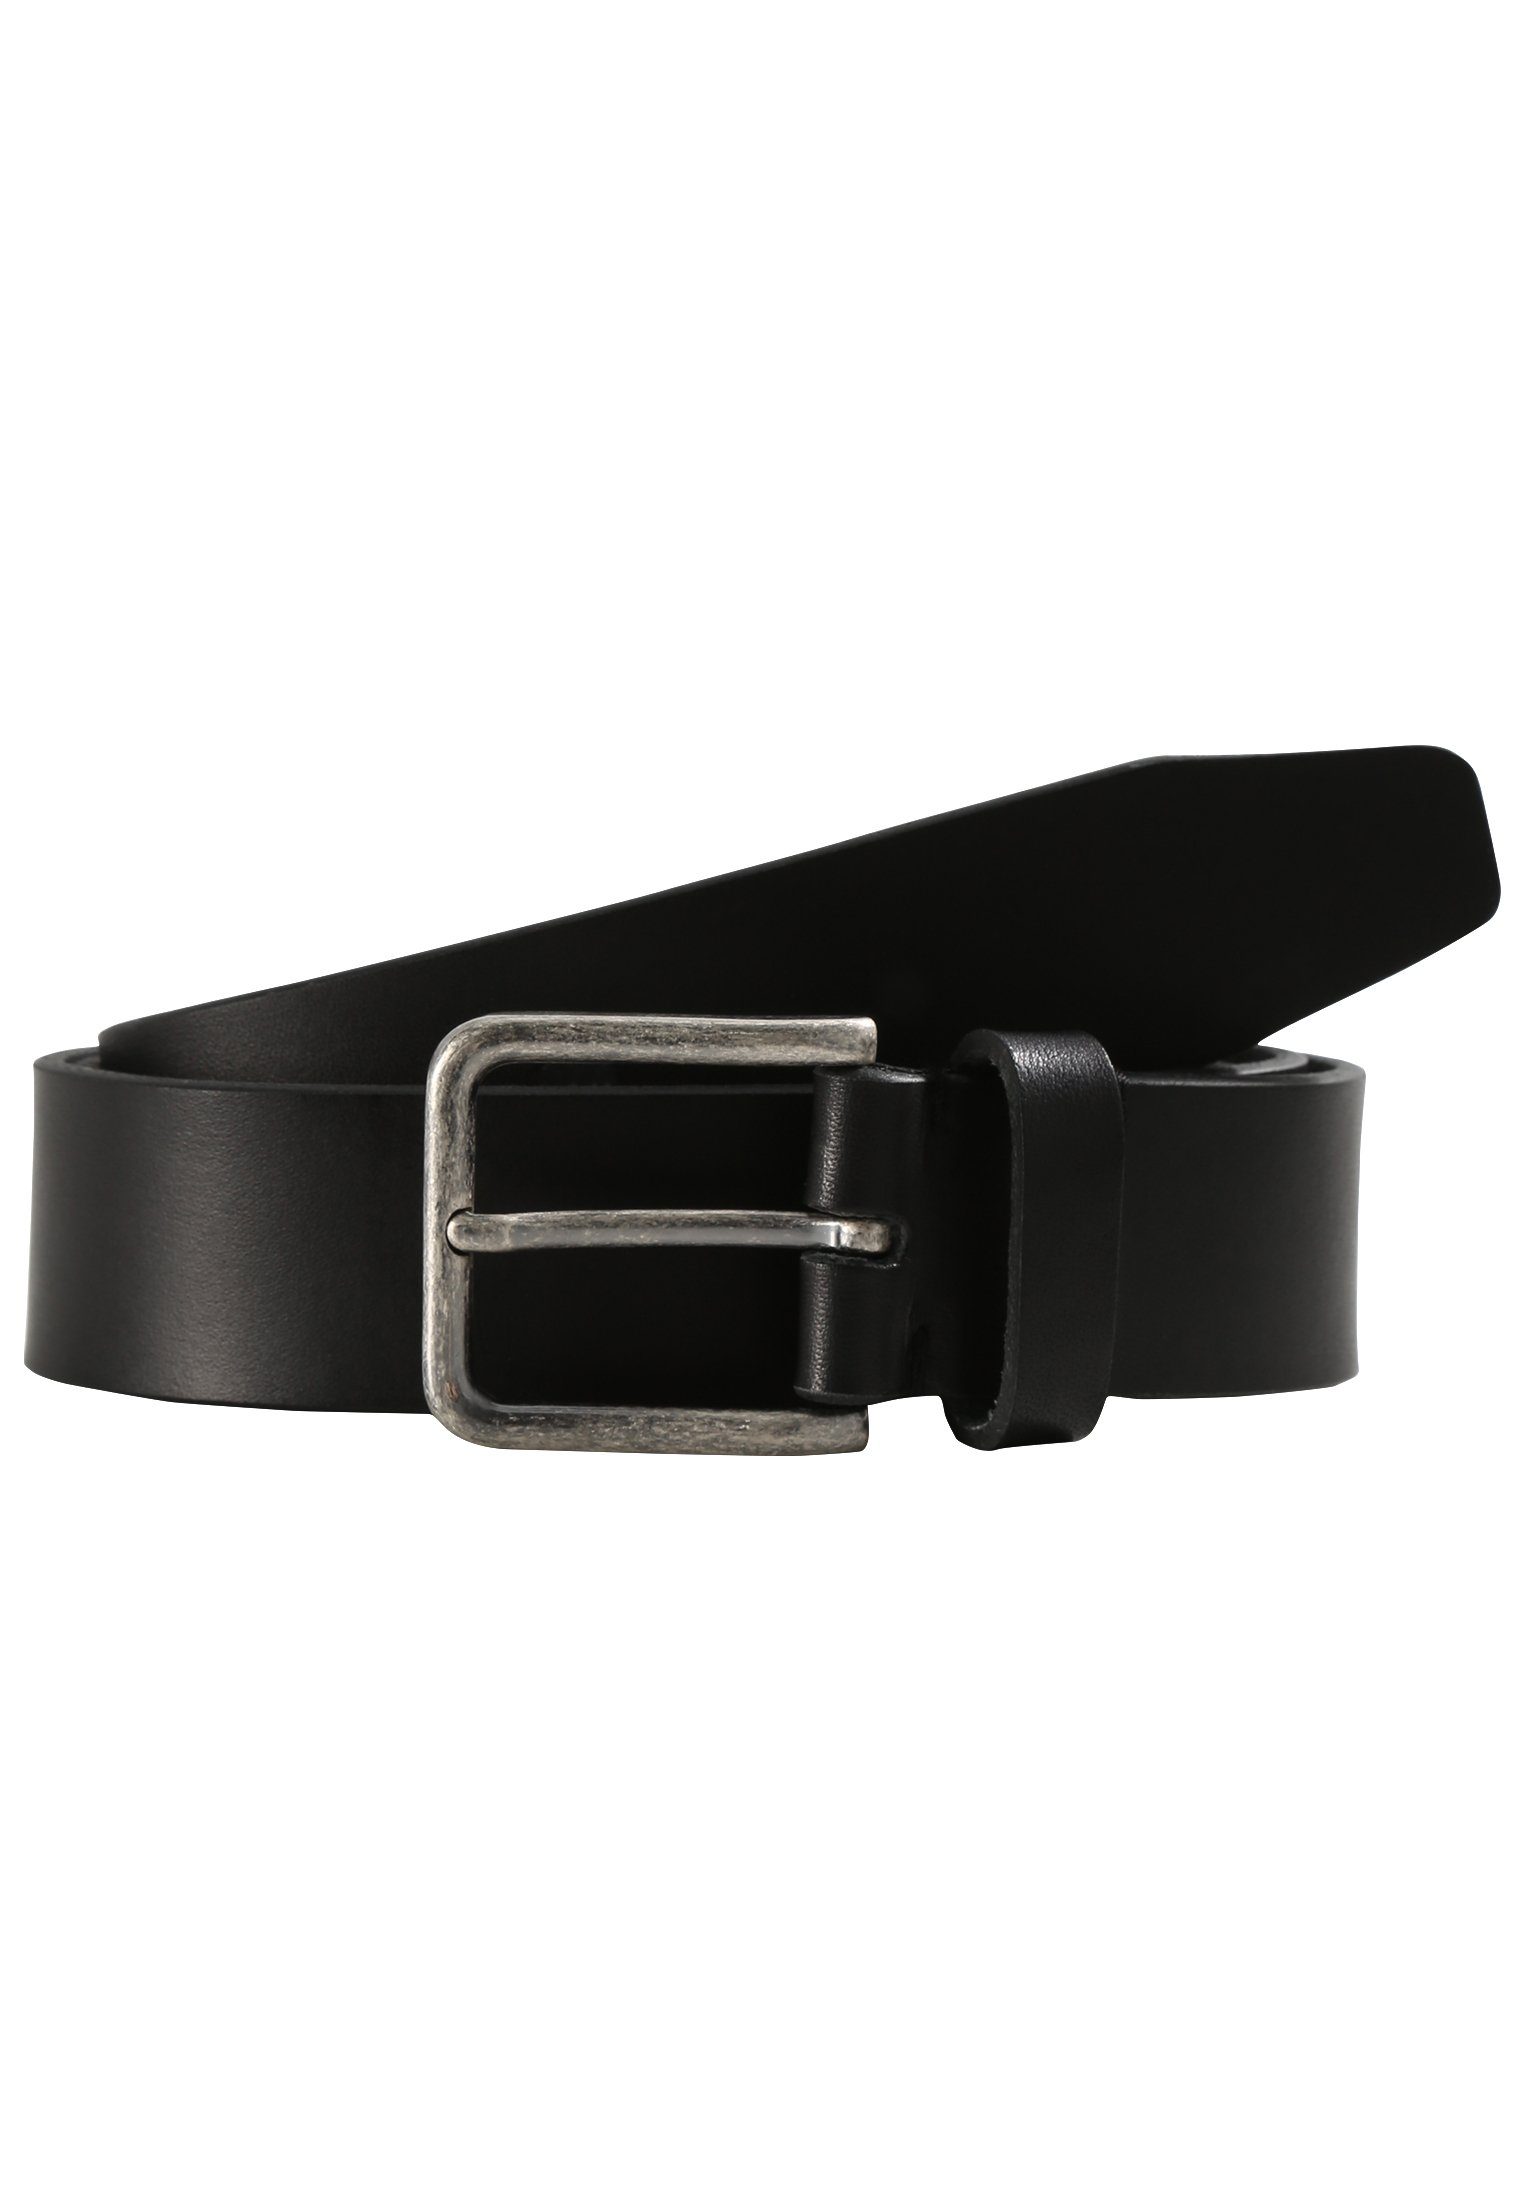 LLOYD Men’s Belts Ledergürtel Vollrindleder mit Gürtel schwarz